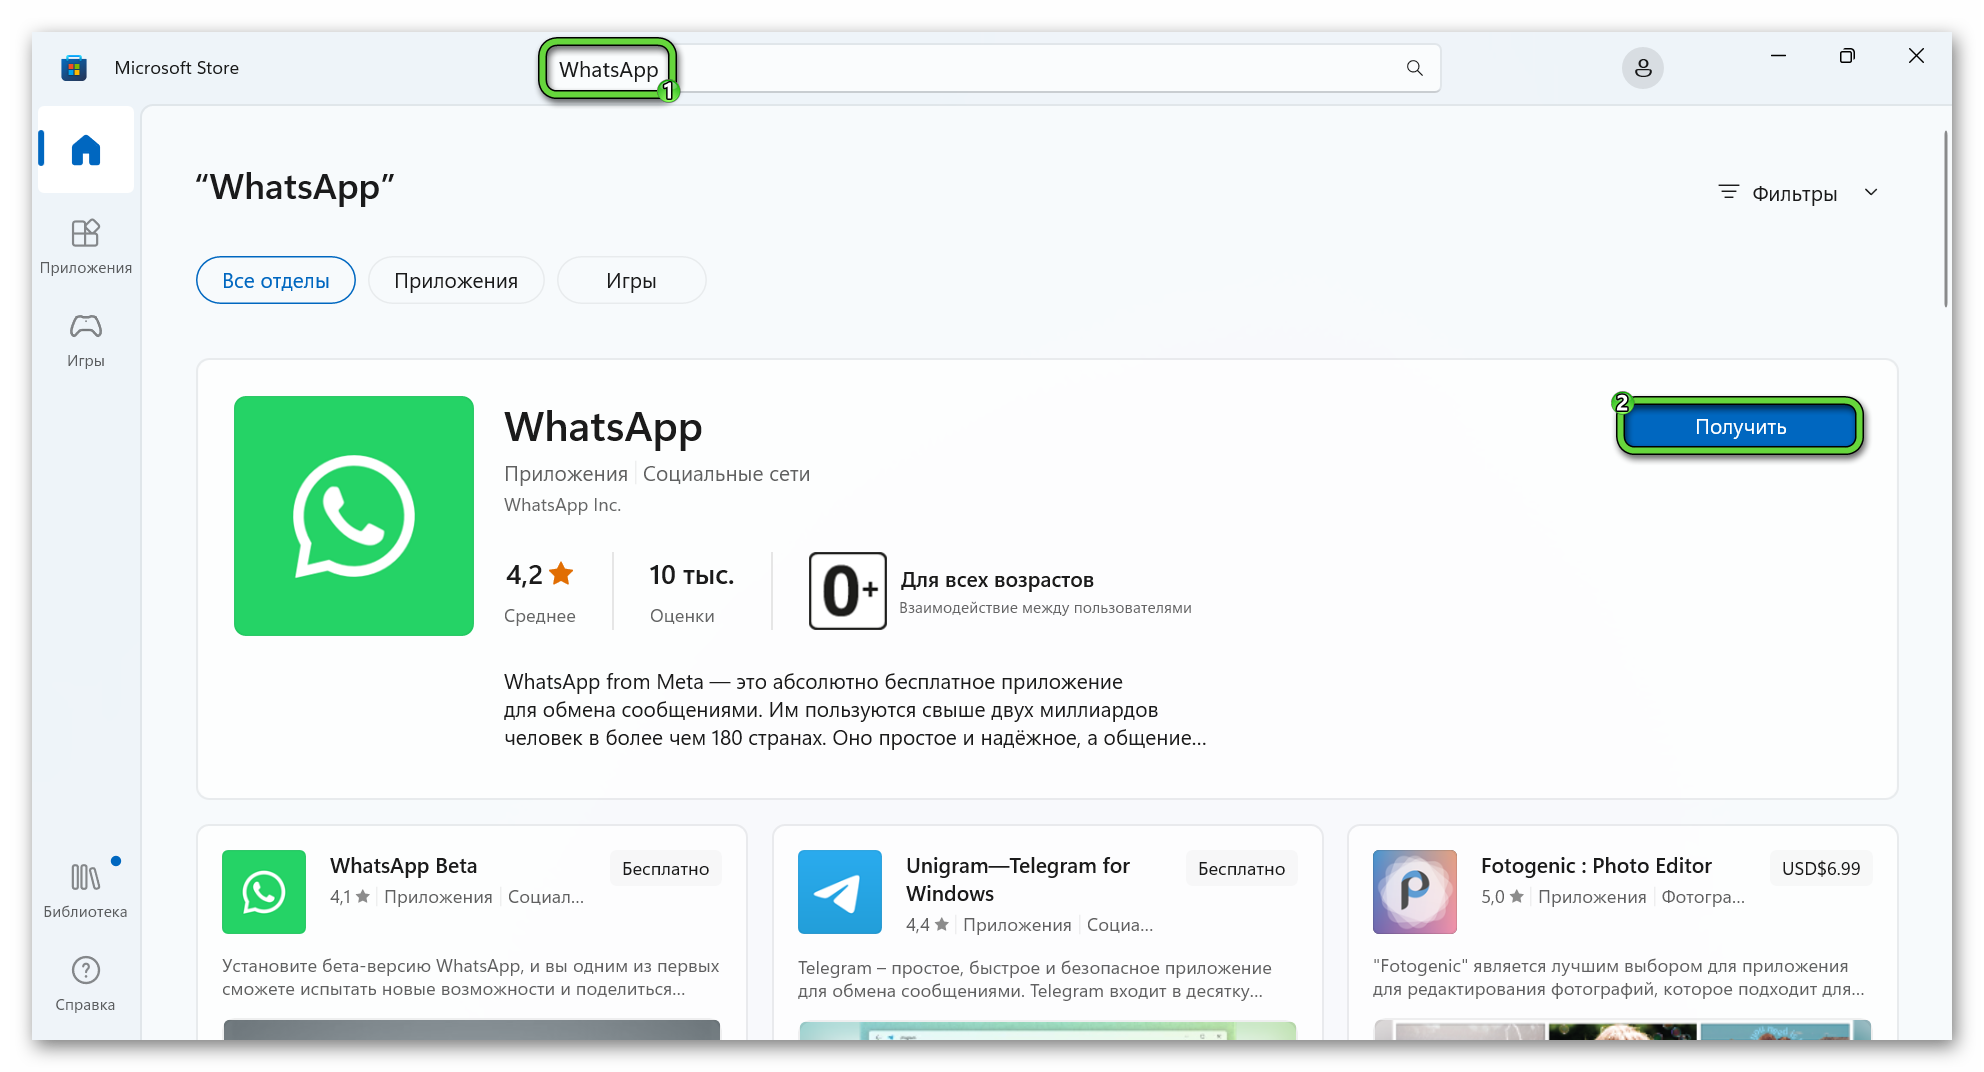 Кнопка Получить для WhatsApp в магазине Microsoft Store